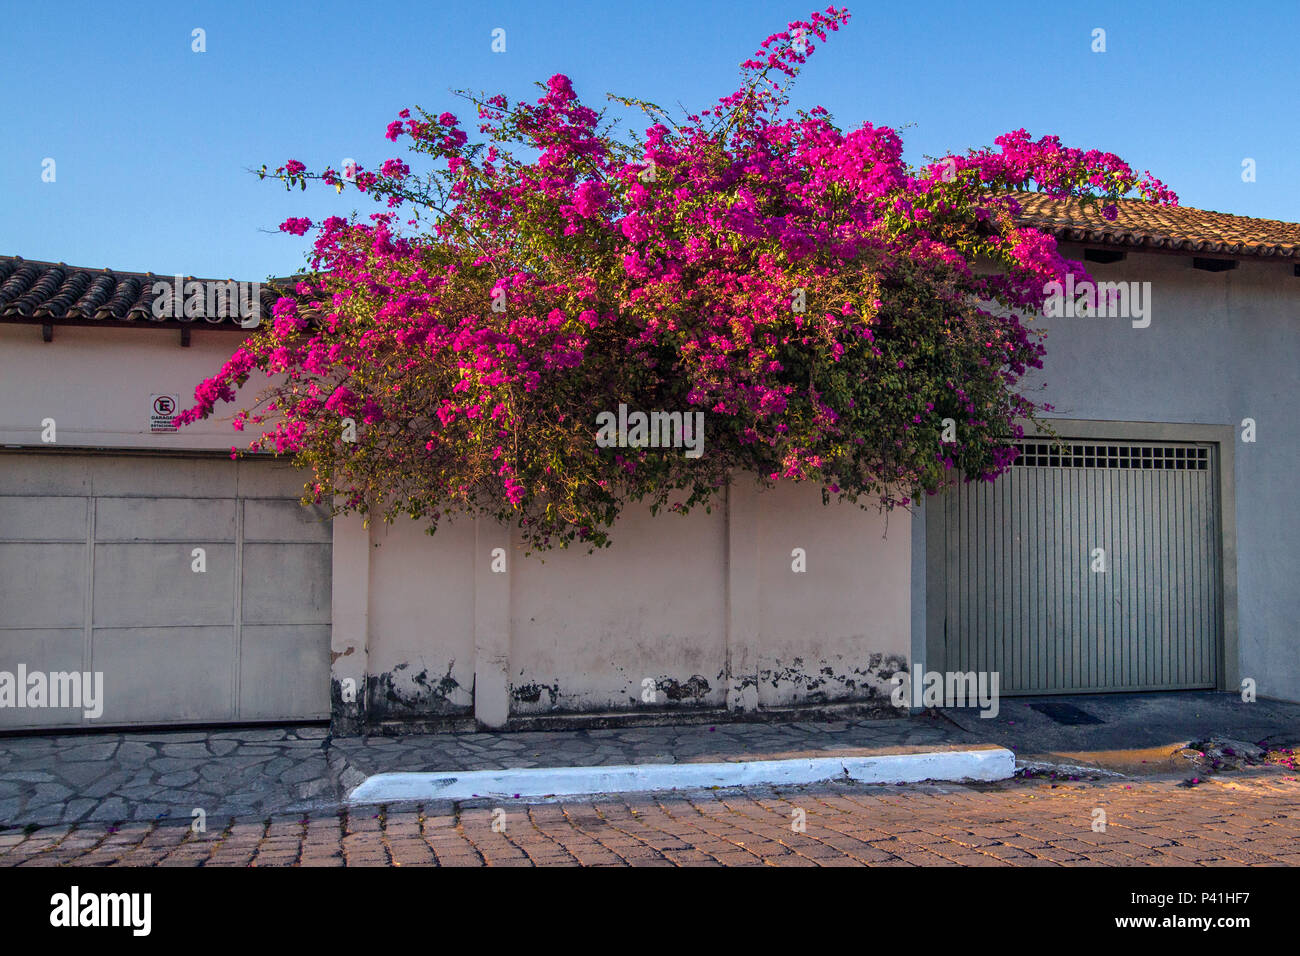 Arbusto de flor de papel hi-res stock photography and images - Alamy